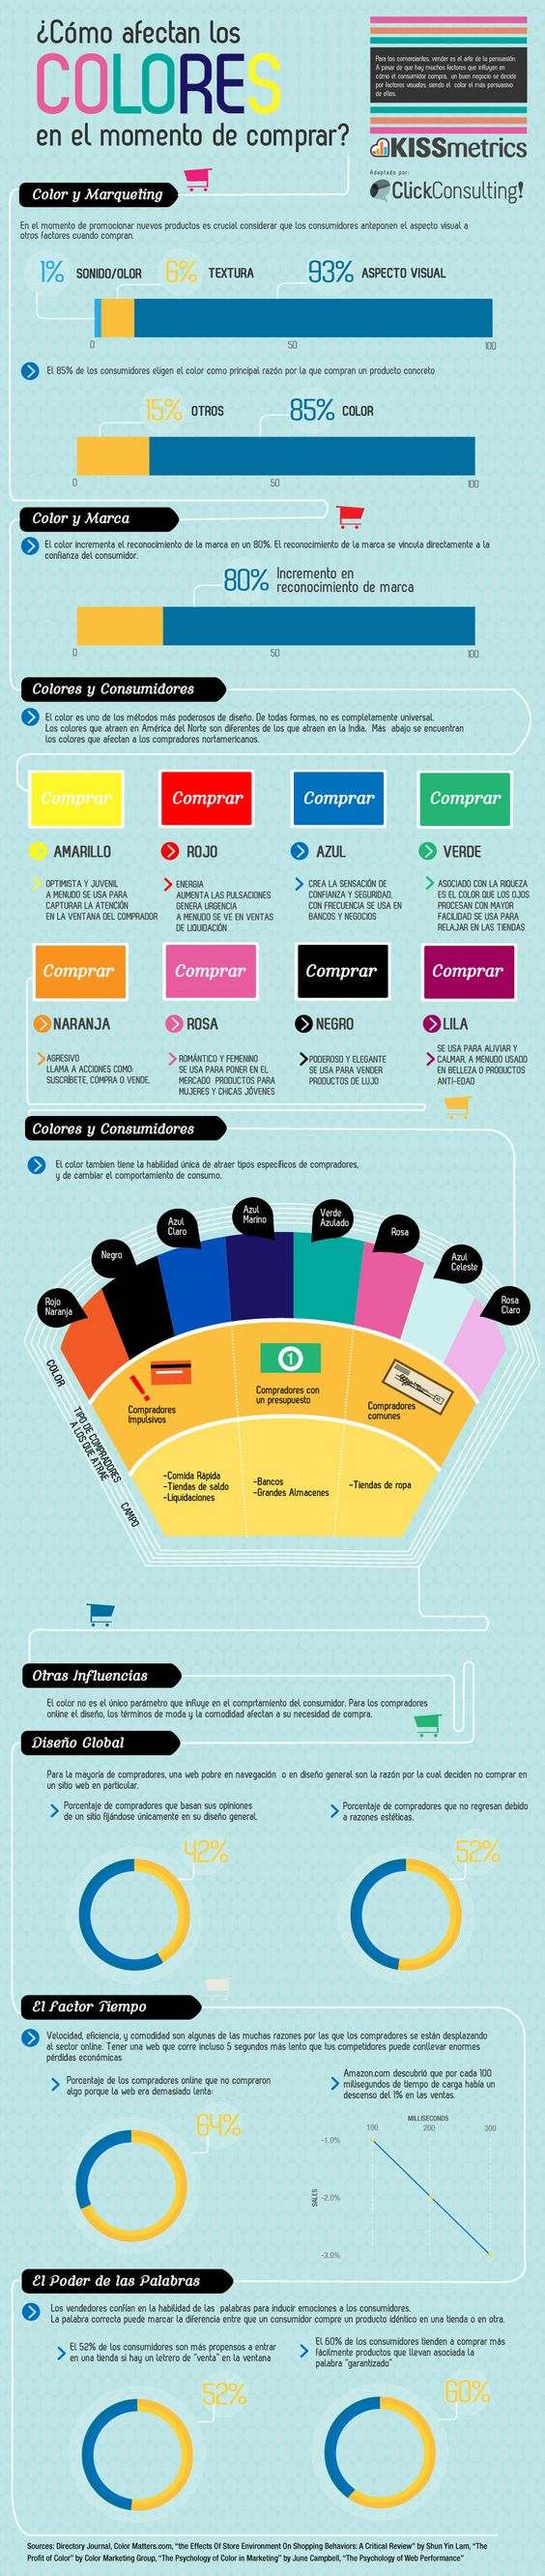 Los colores en el momento de comprar. Infografia en español. #CommunityManager